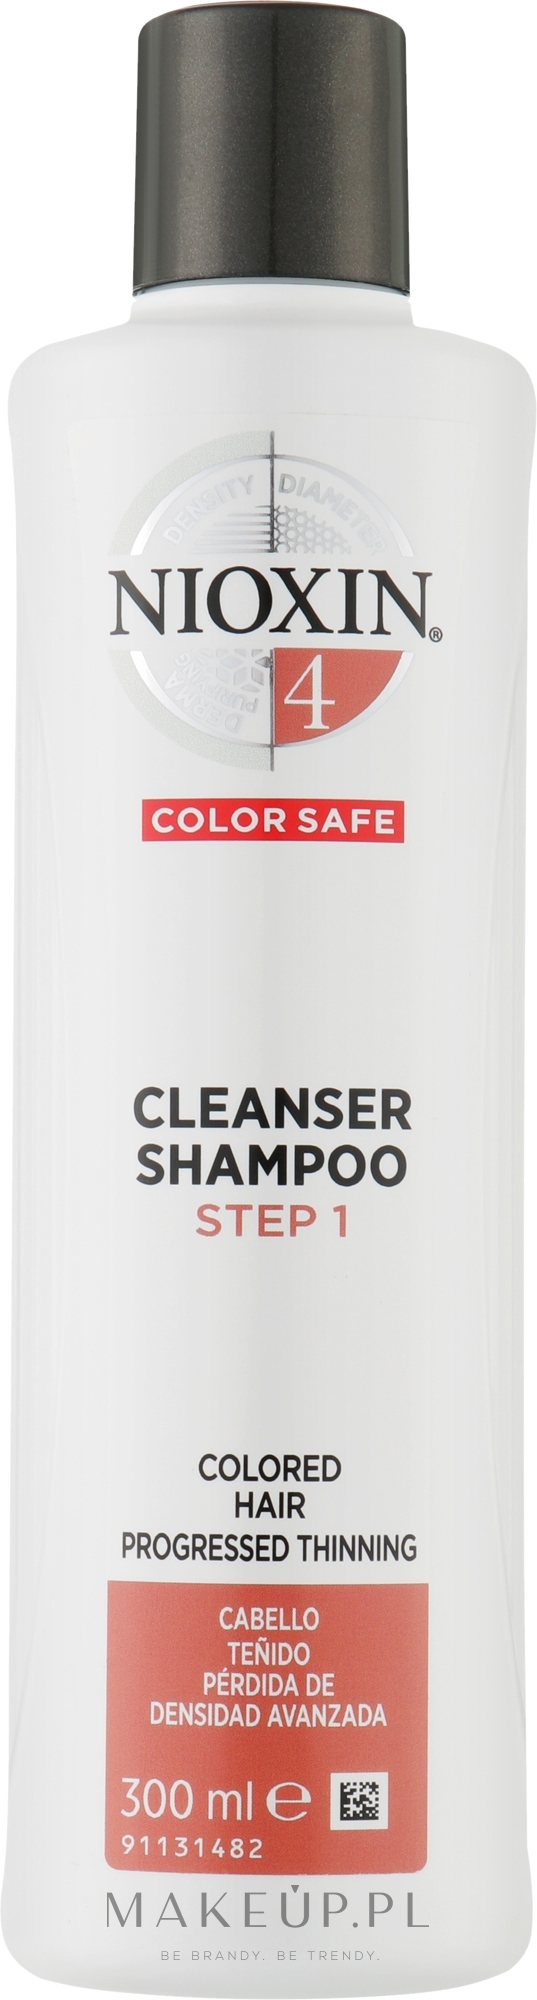 Szampon oczyszczający chroniący kolor włosów i zmywający sebum, kwasy tłuszczowe i zanieczyszczenia środowiskowe - Nioxin System 4 Color Safe Cleanser Shampoo Step 1 — Zdjęcie 300 ml